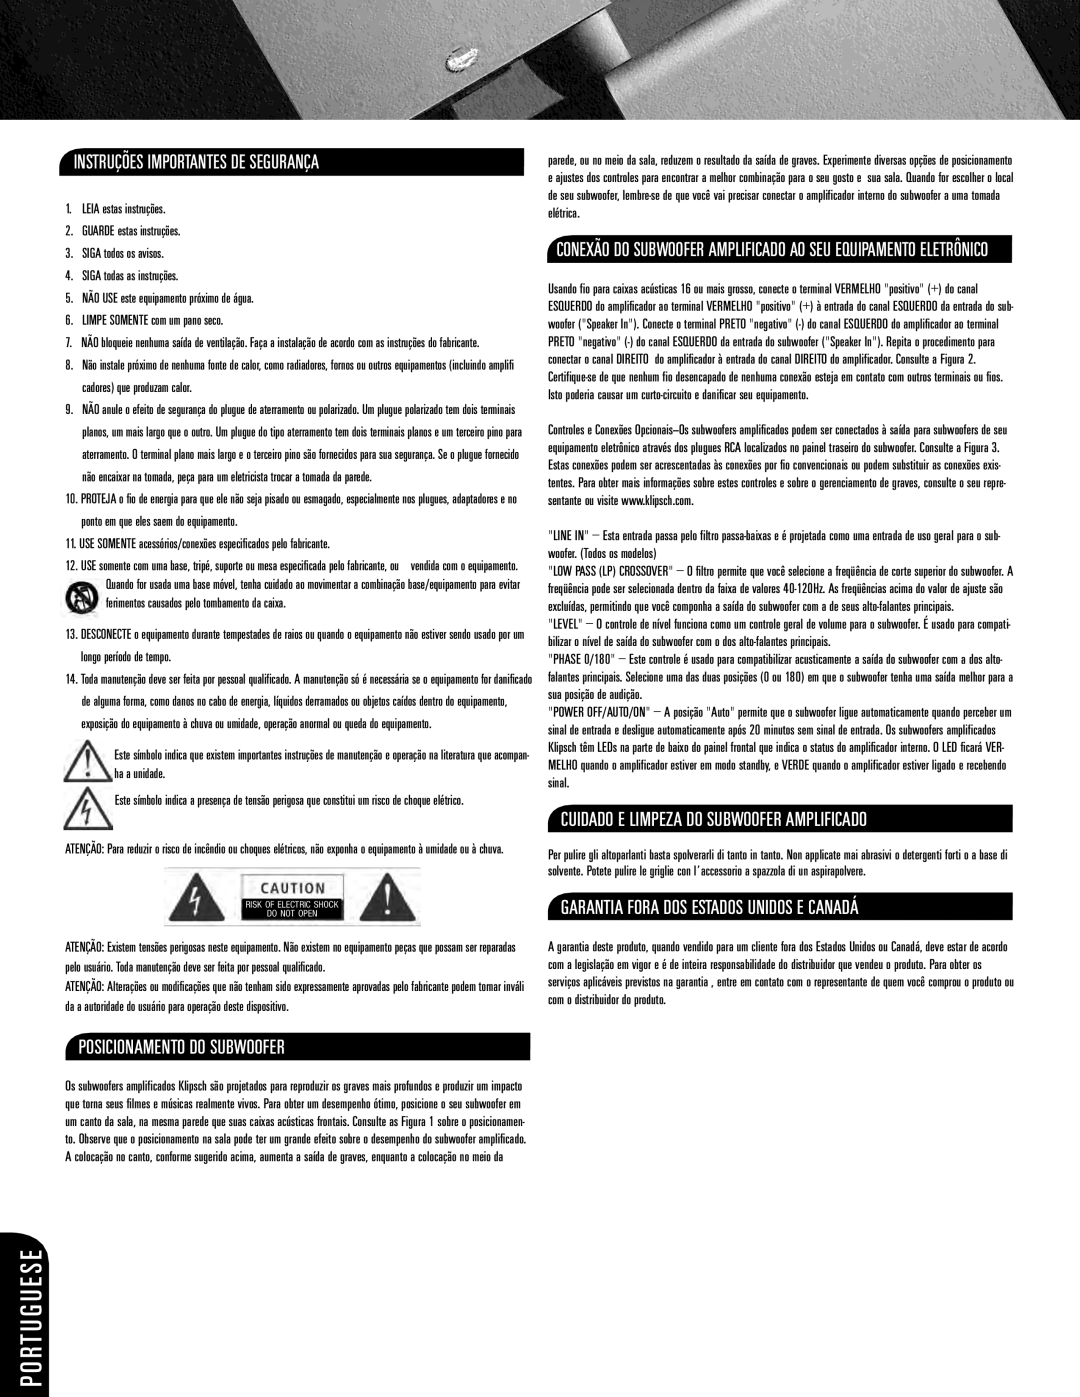 Klipsch ksw-08-new owner manual Posicionamento Do Subwoofer, Instruções Importantes De Segurança, P O Rt U G U E S E 